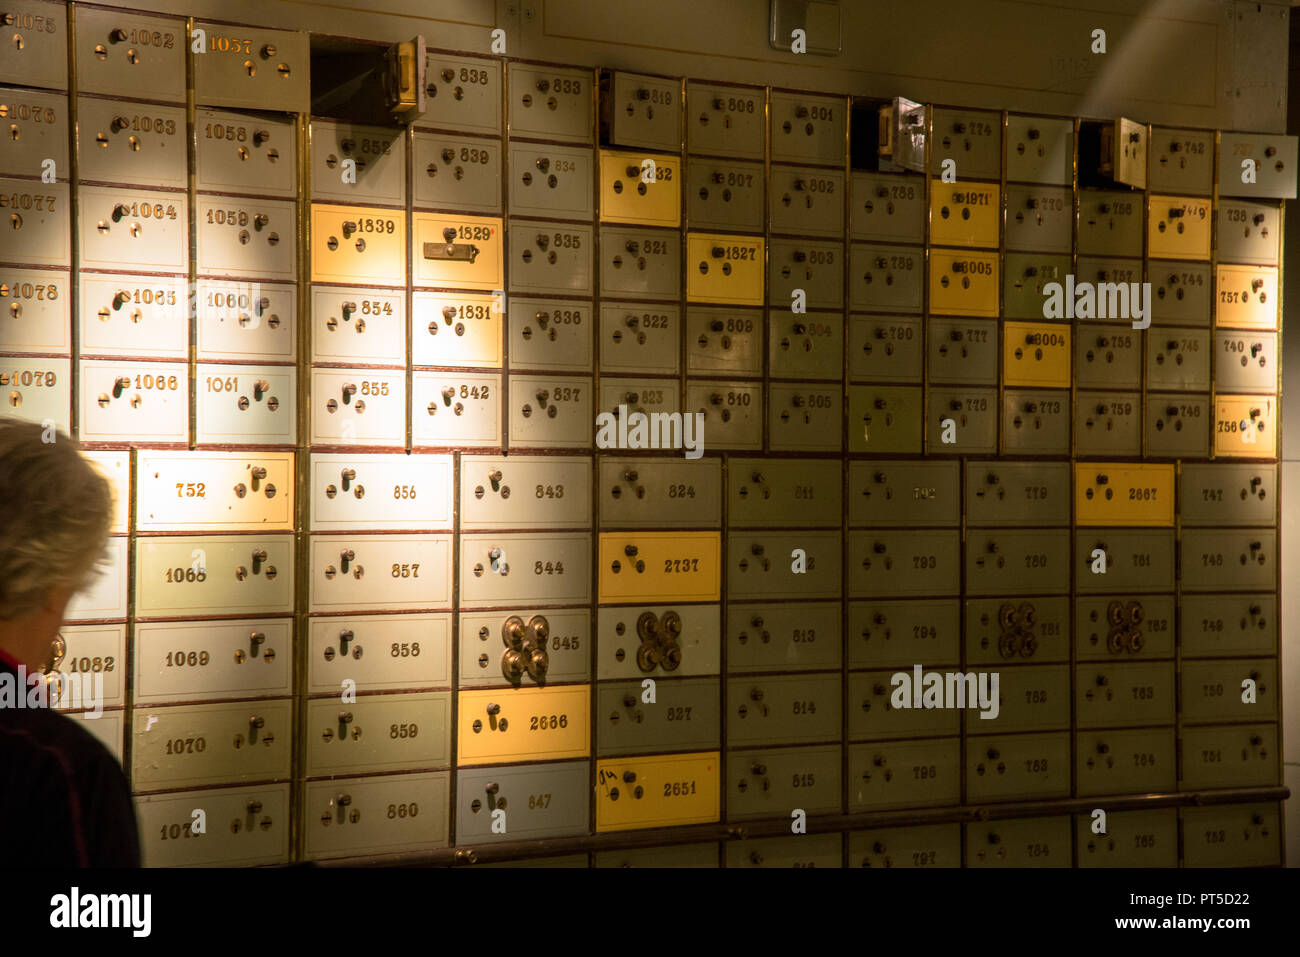 L'ancienne numérotation des casiers sécurisés à l'ancien bâtiment de la banque à Den Haag, Pays-Bas Banque D'Images